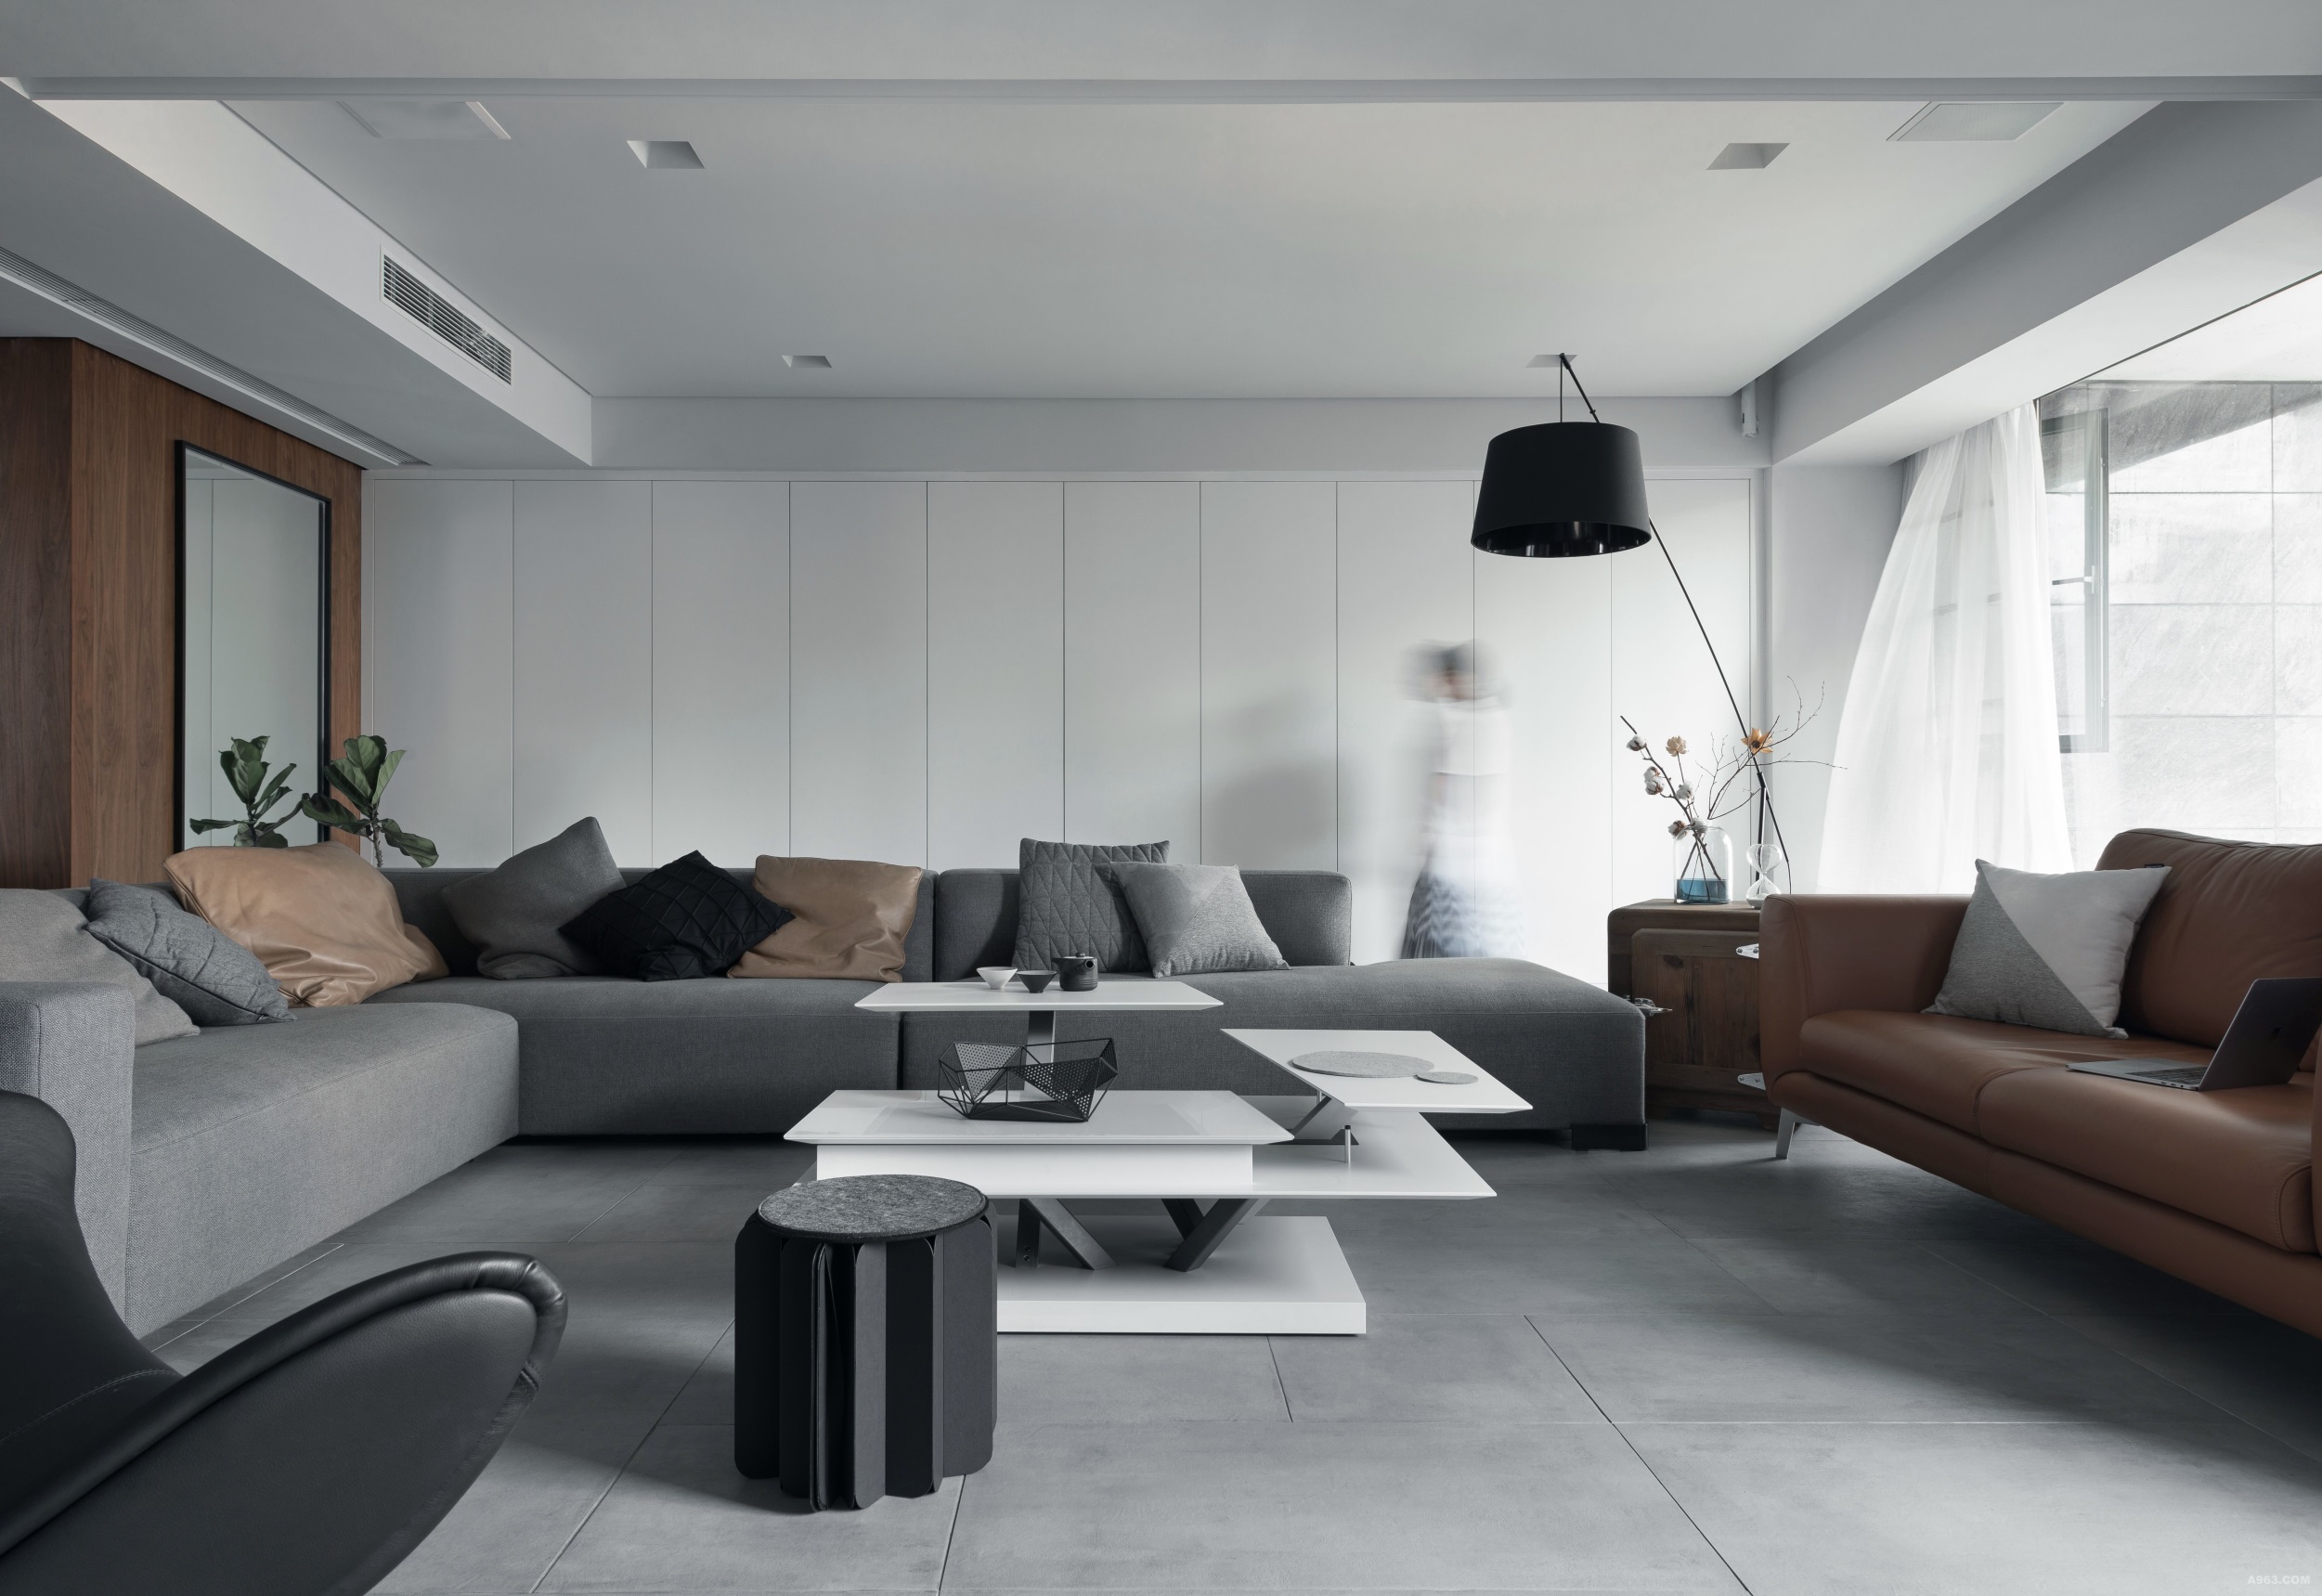 客厅的设计主要是通过简单明亮的线条和冷色来装饰，同时增加了家居的实用性。